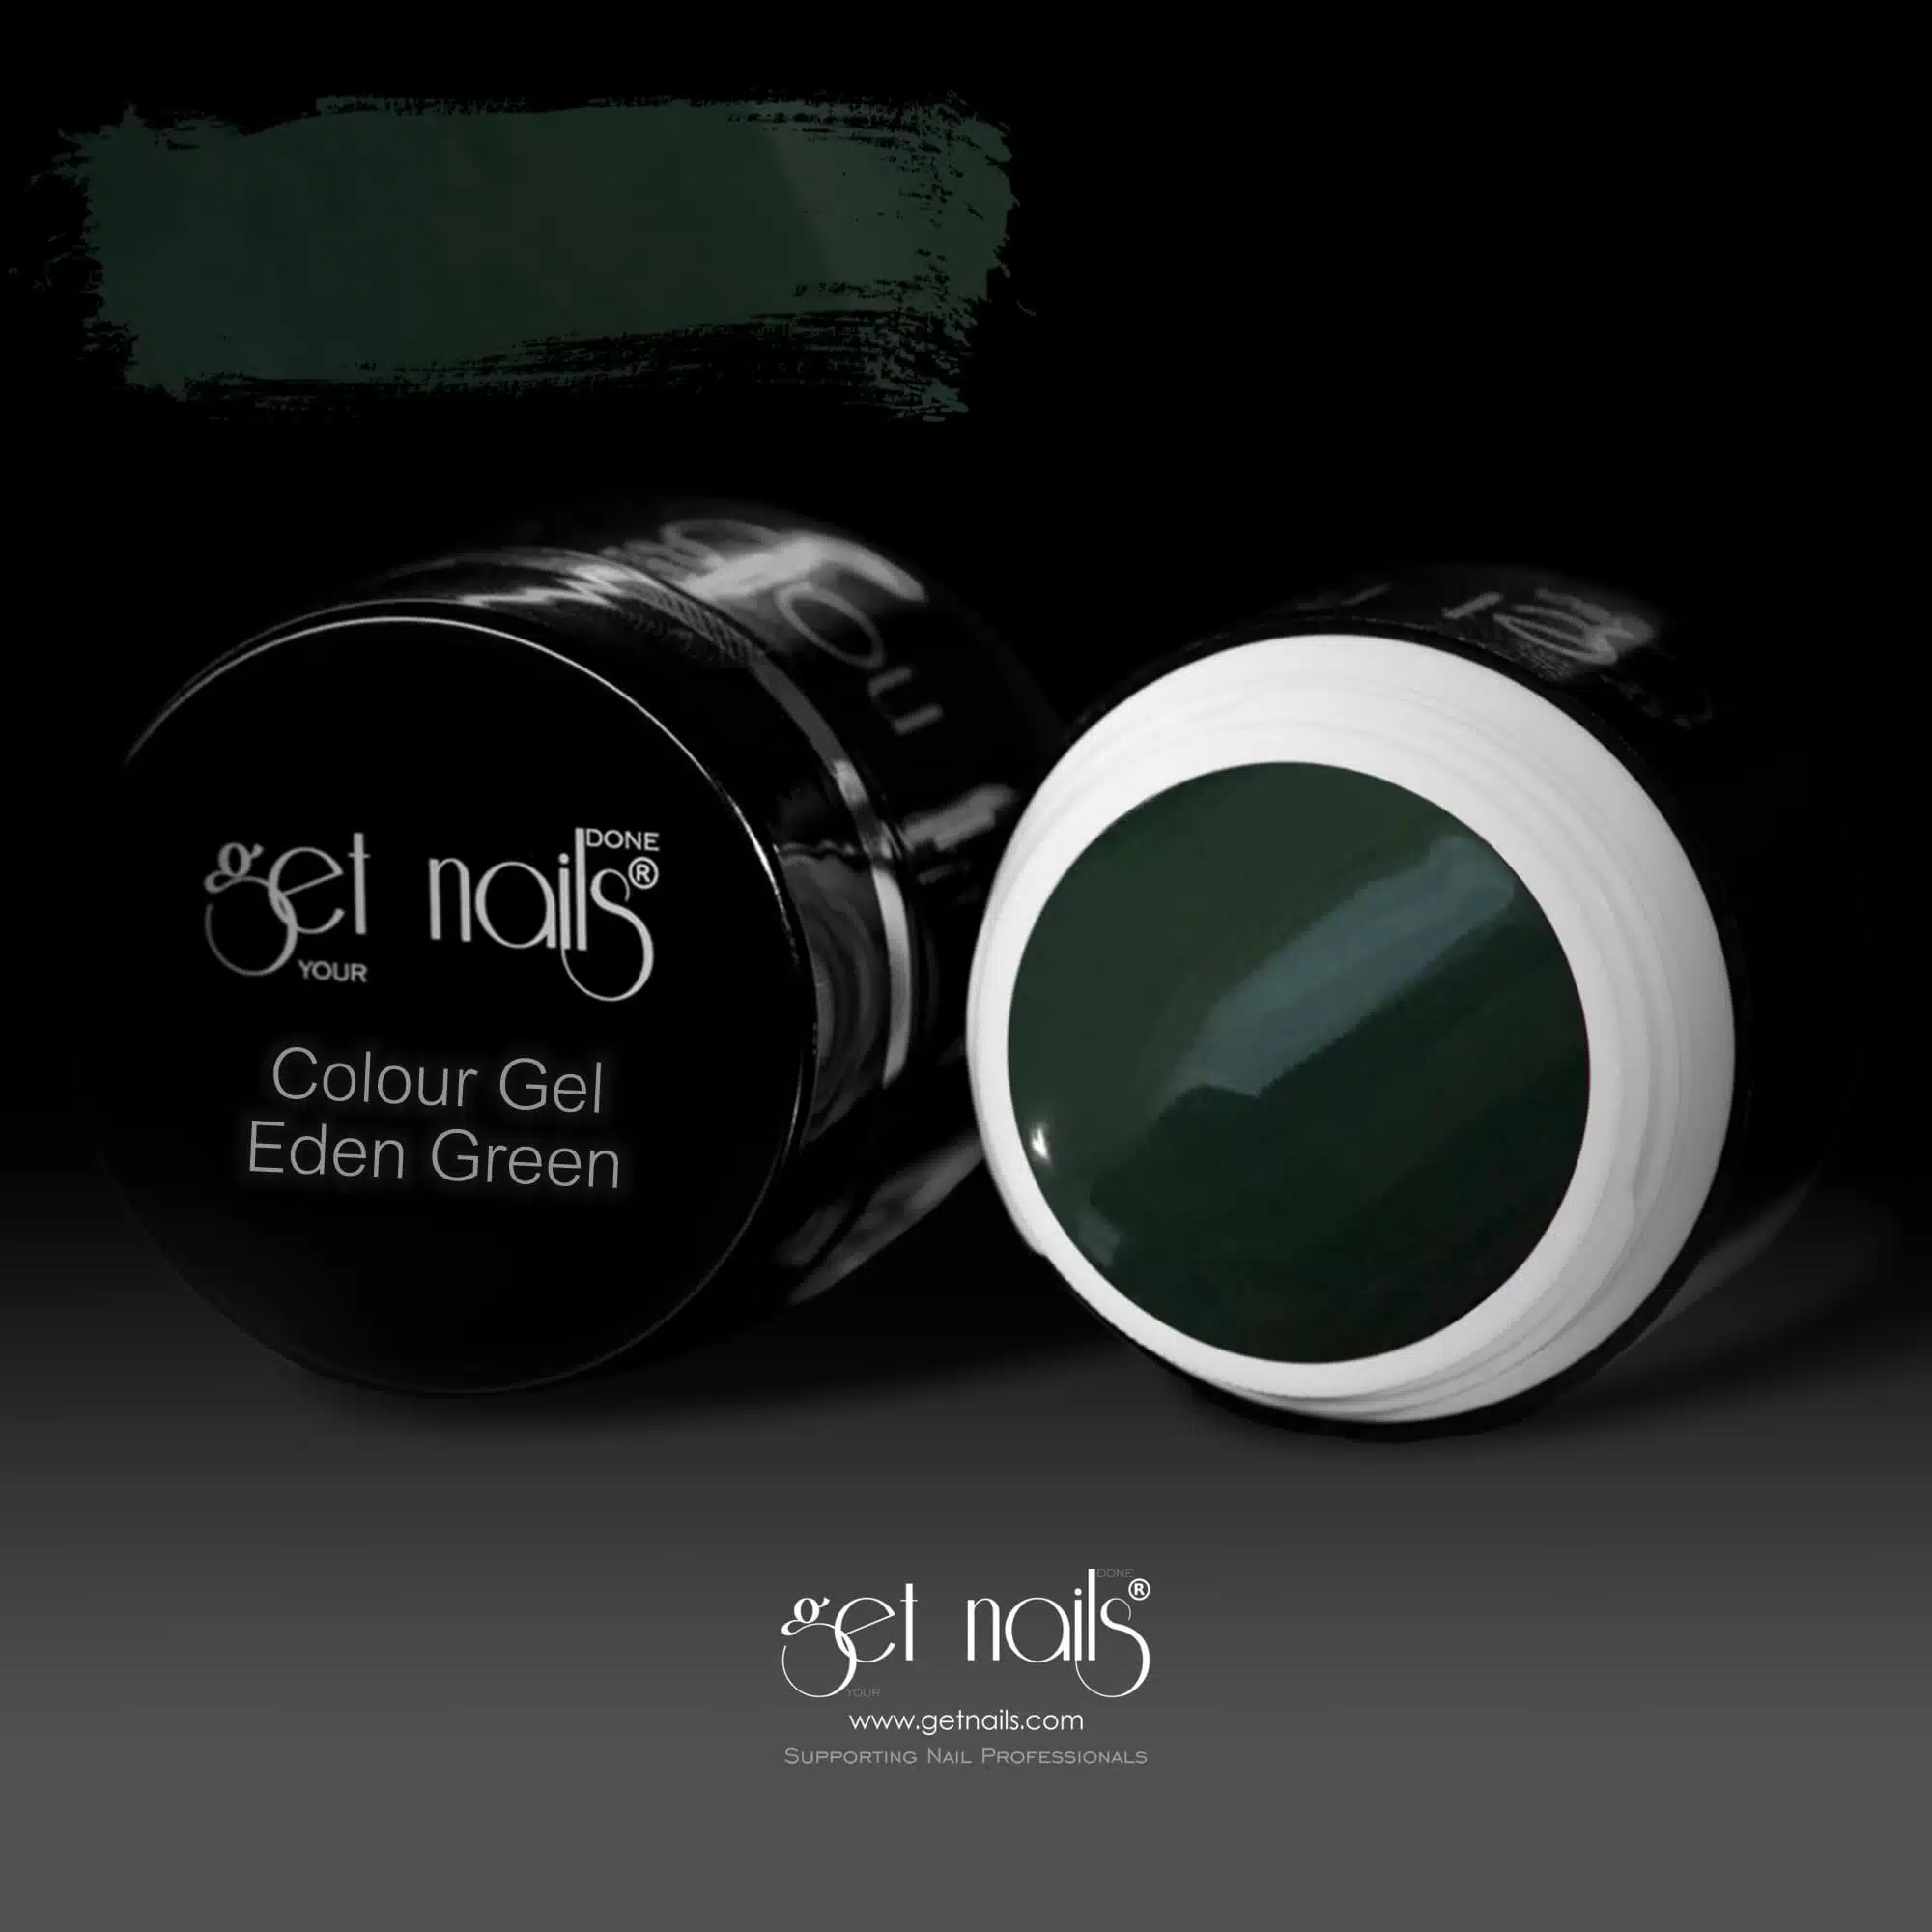 Get Nails Austria - Color Gel Eden Green 5g